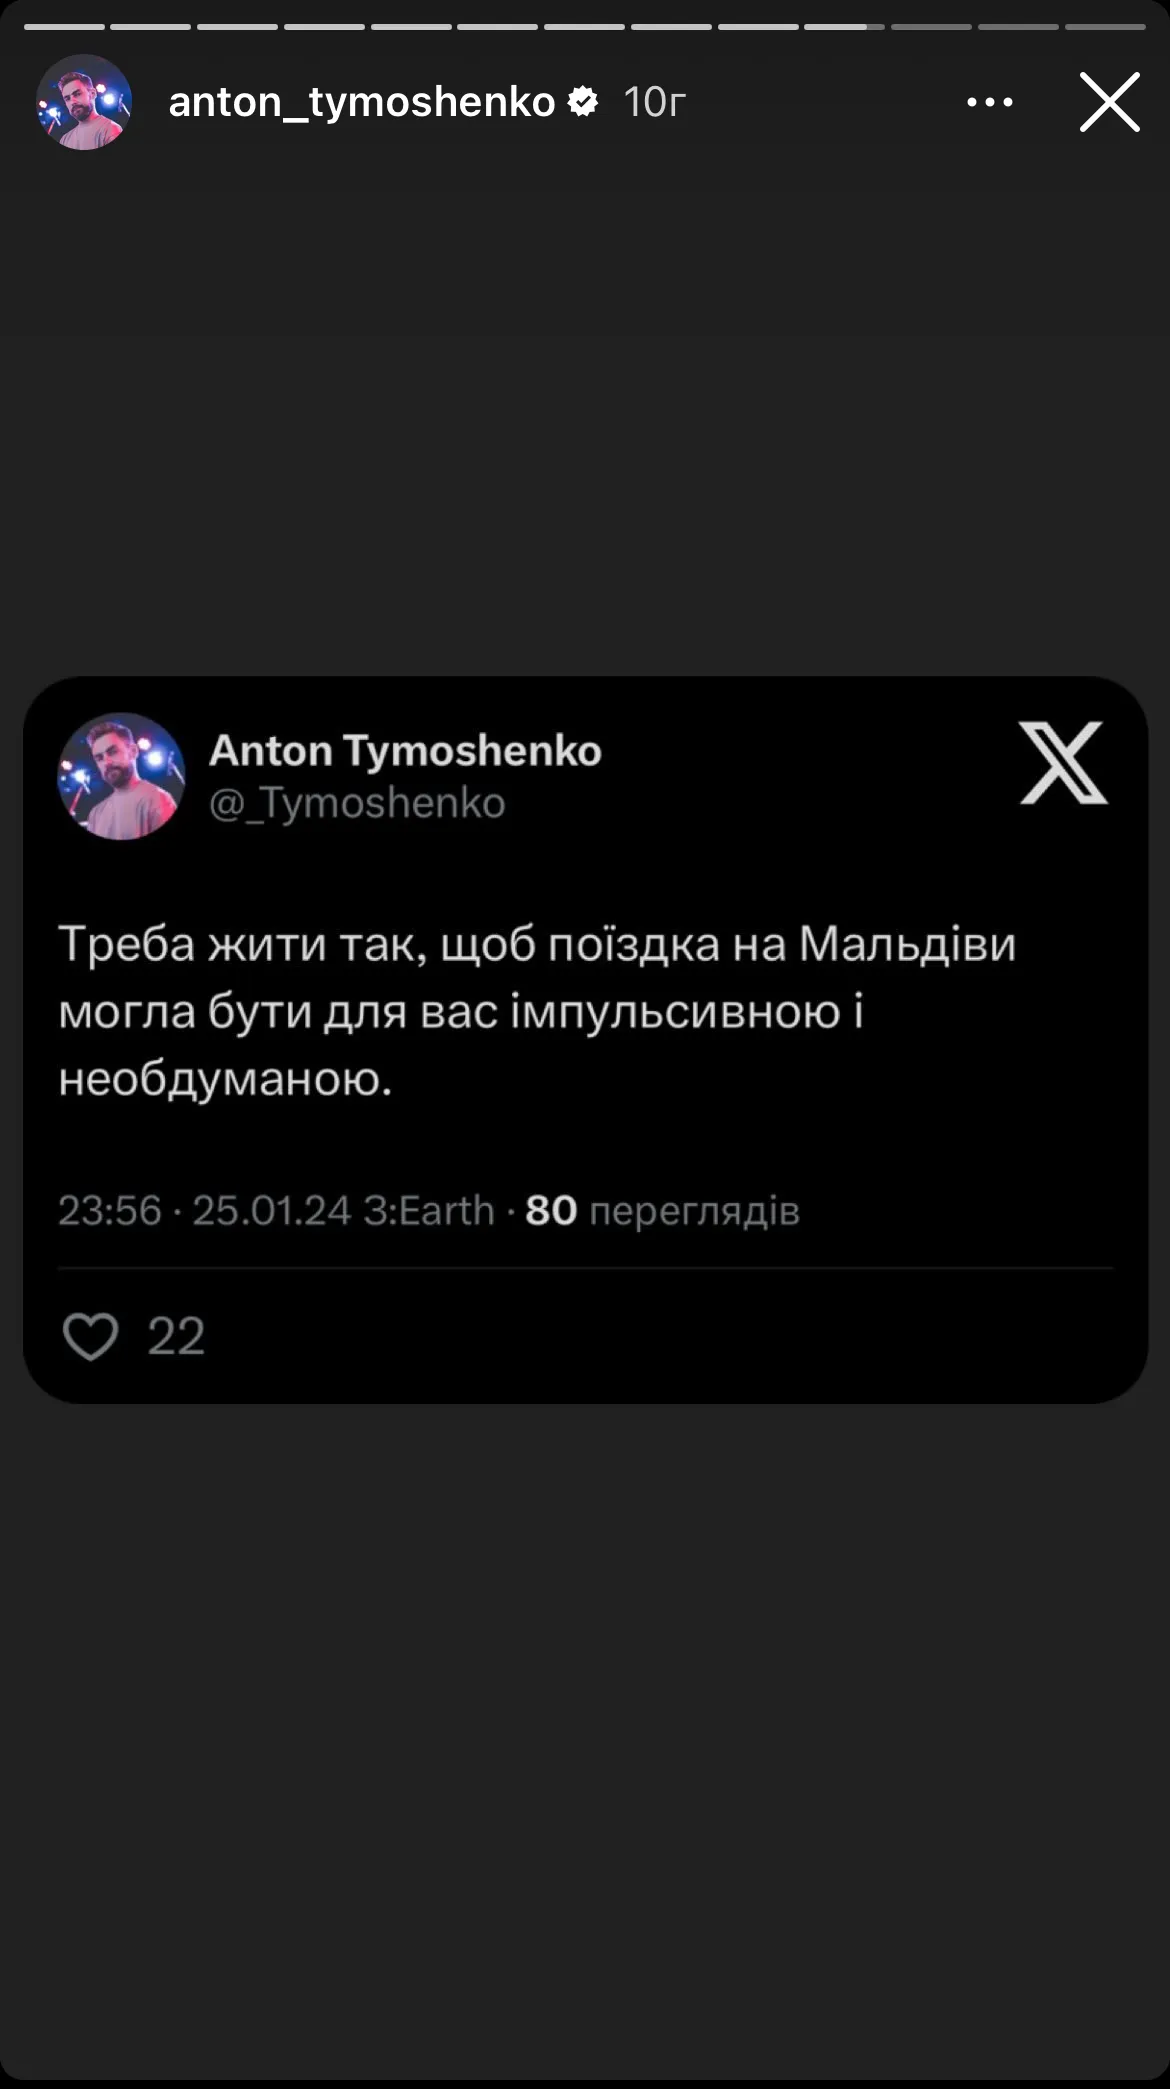 Тимошенко висловився про блогерів